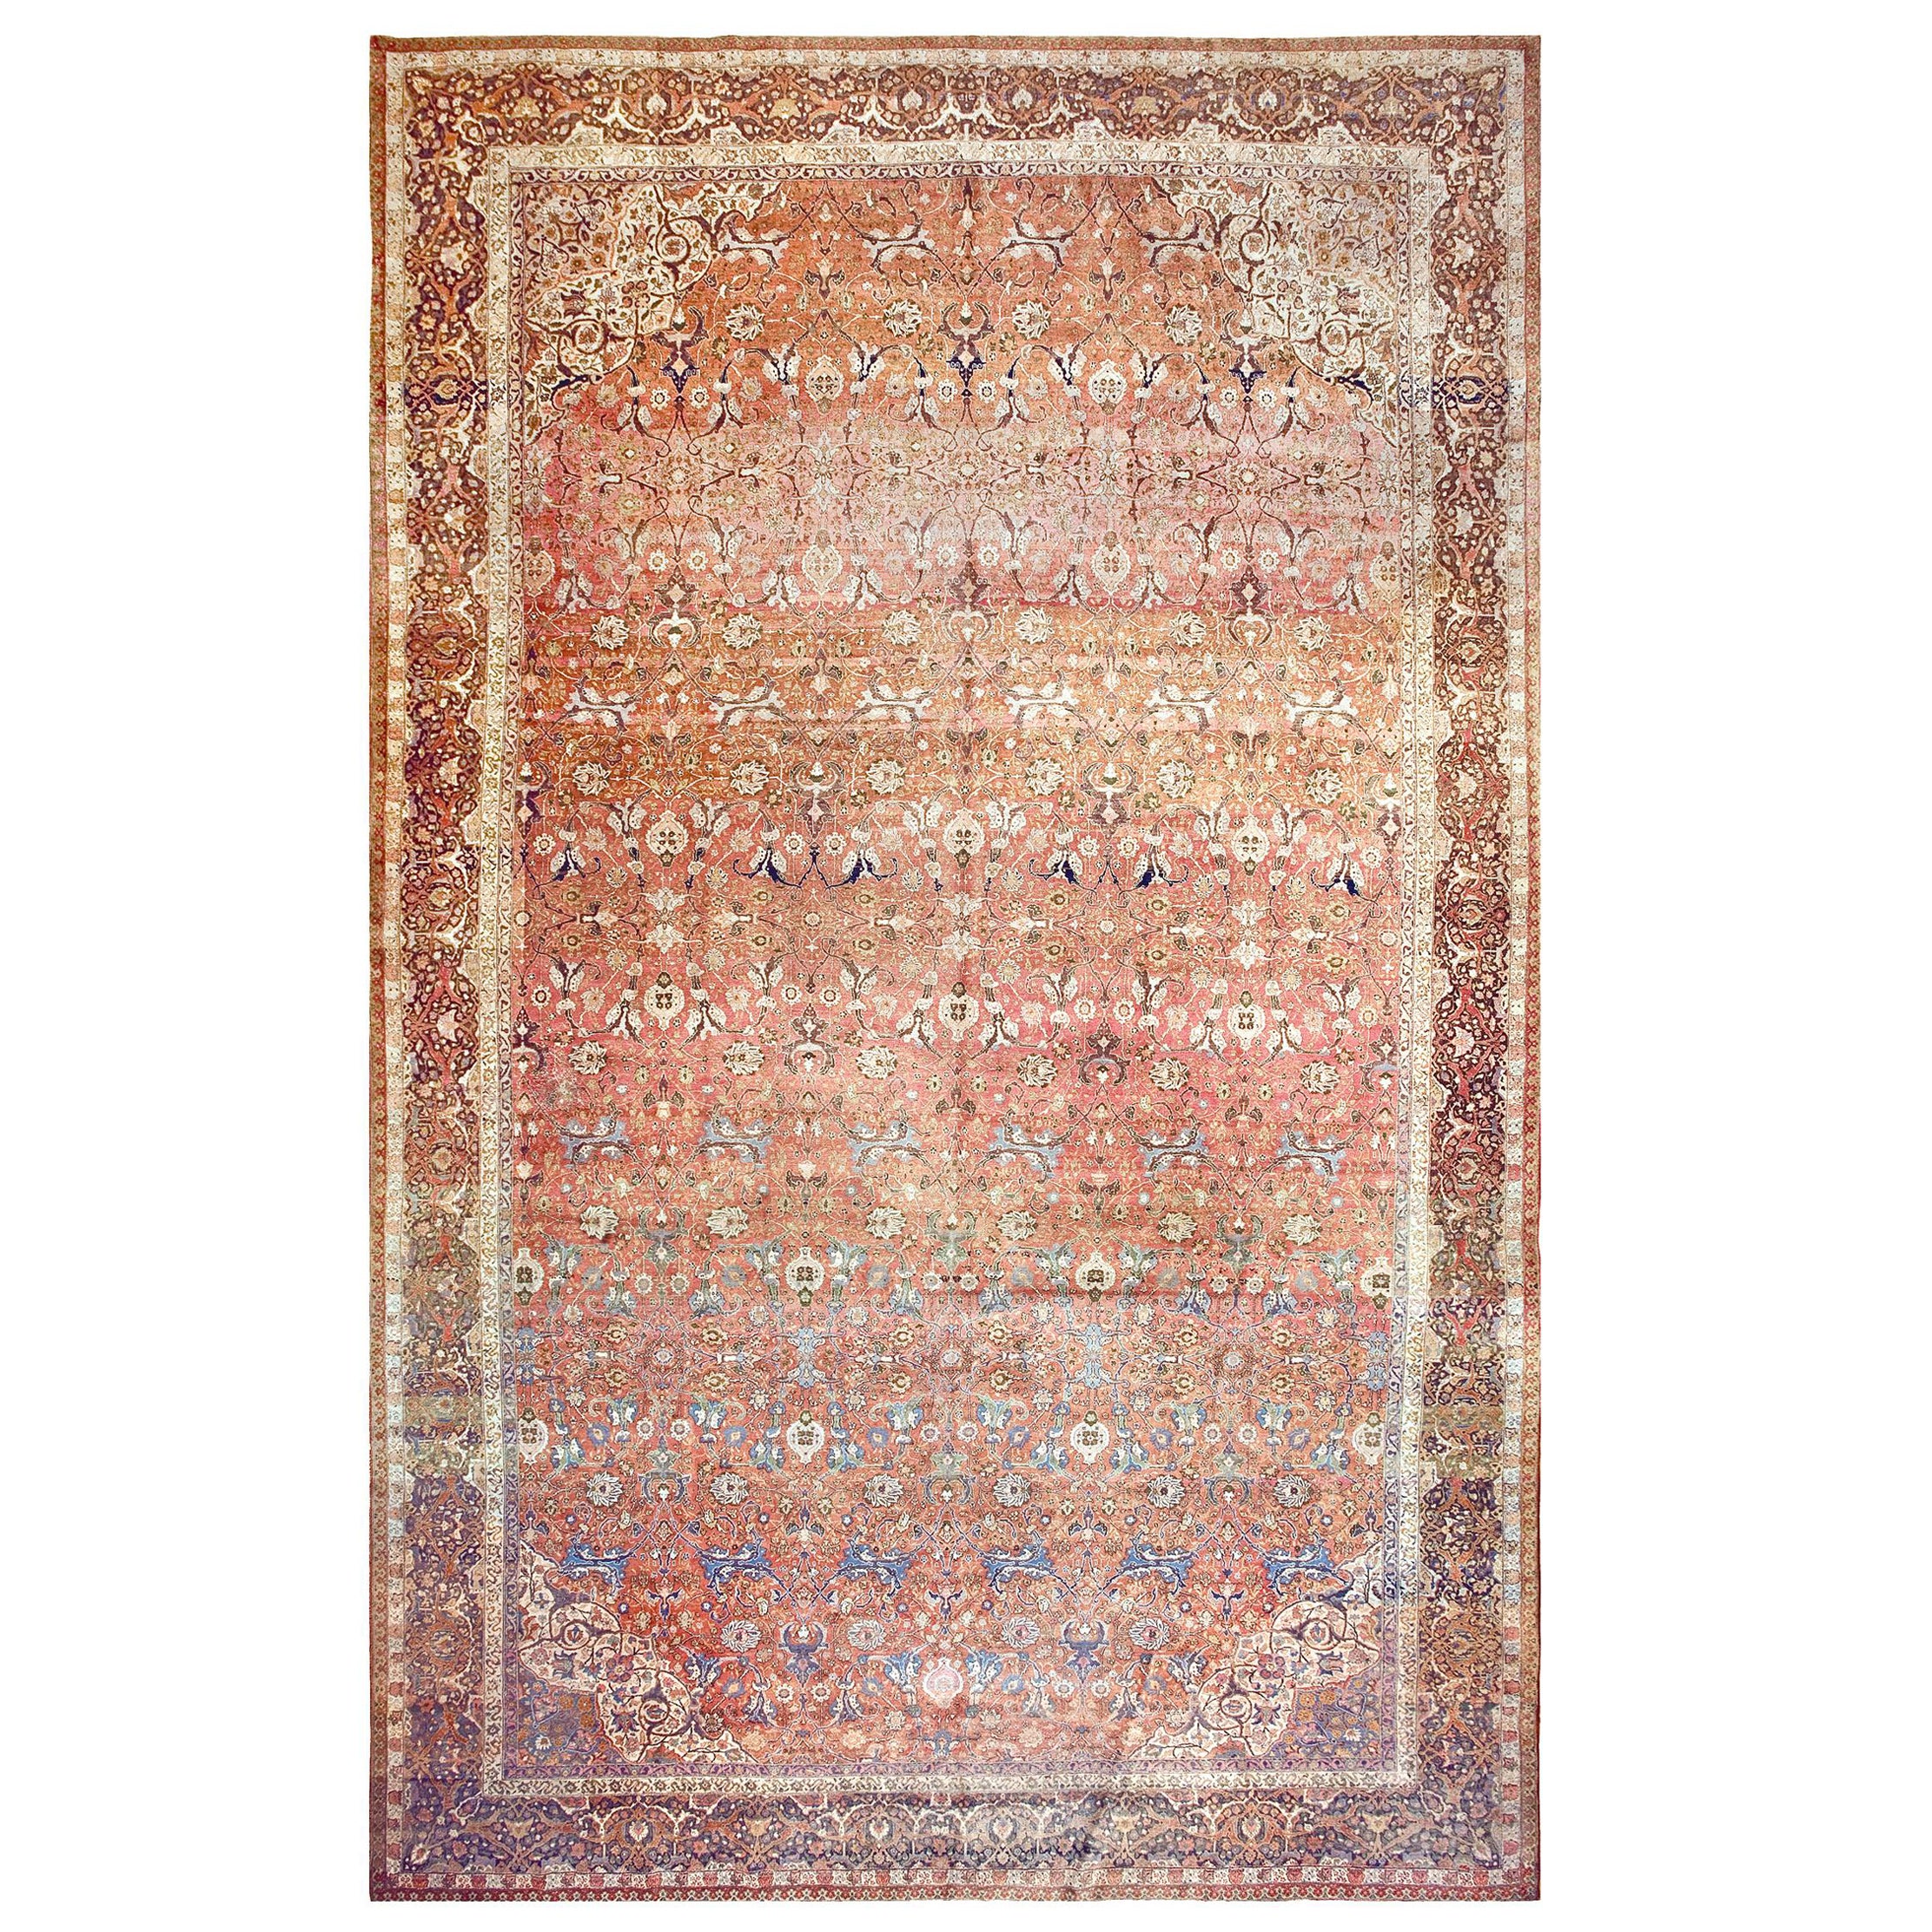 19th Century Persian Tabriz Haji Jalili Carpet ( 12'9" x 20'6" - 390 x 625 )